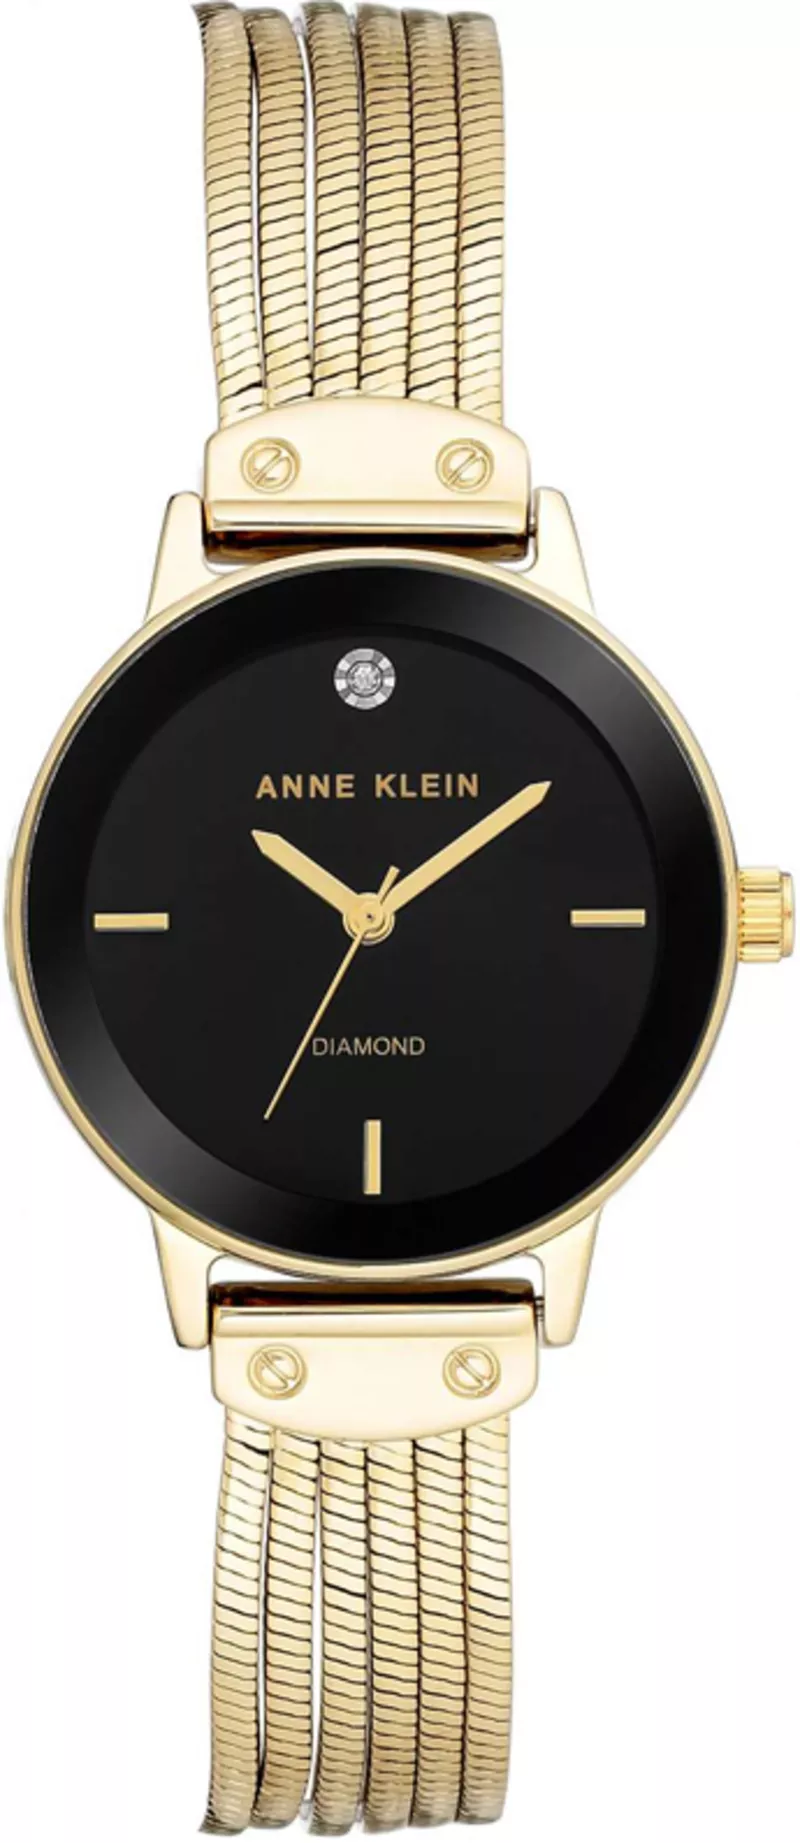 Часы Anne Klein AK/3220BKGB